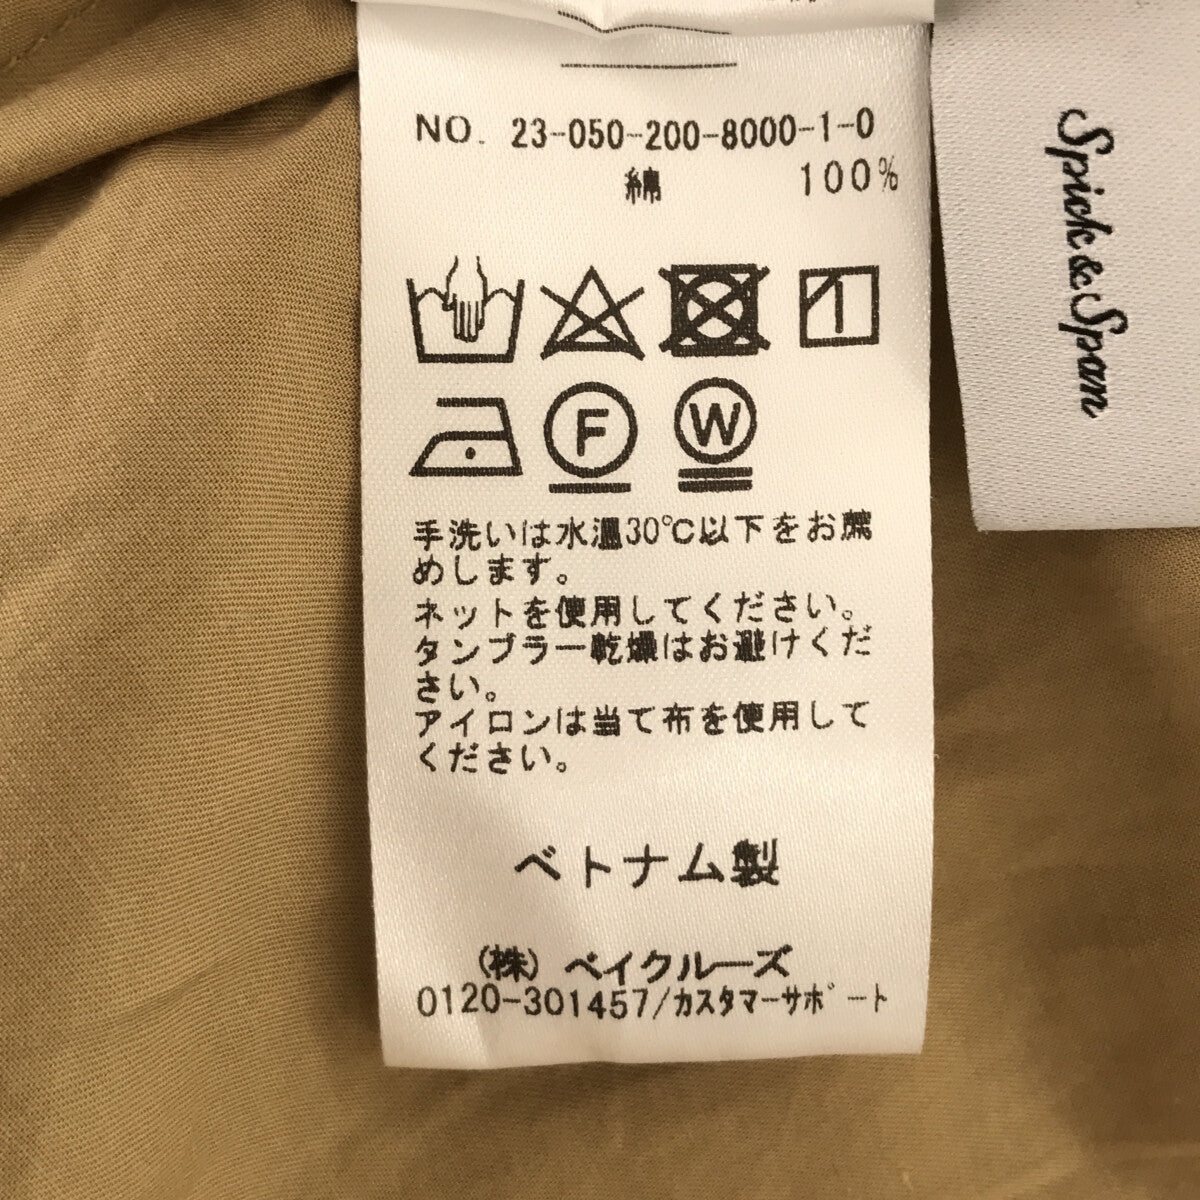 【新品未使用】Spick\u0026span シアーツイルビッグシャツ